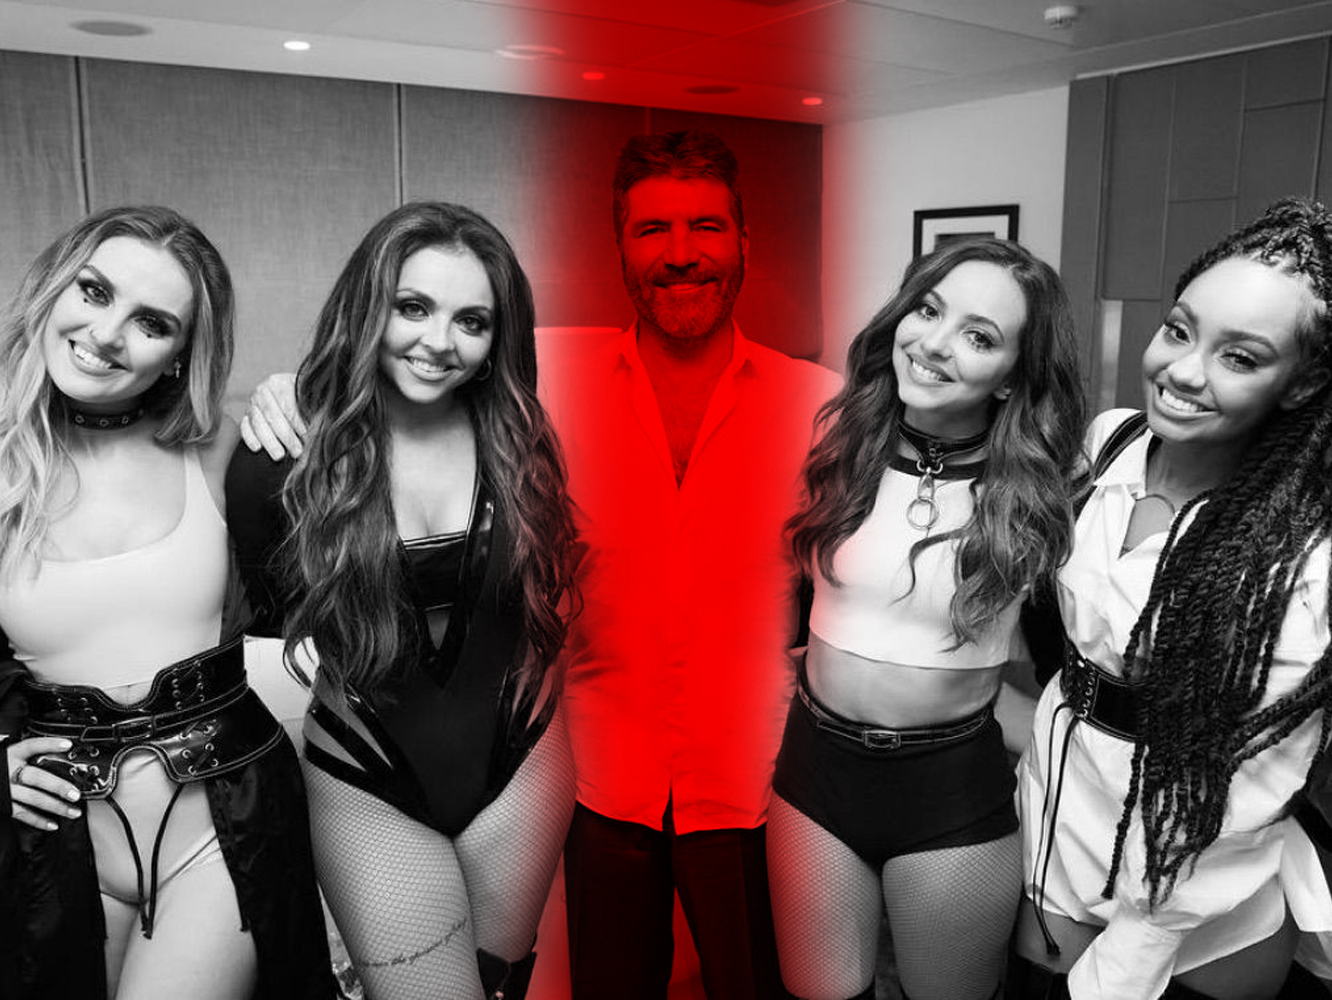  Simon Cowell cancela el ‘ All Stars’ y anuncia ‘The X Factor: The Band’ para enfrentarlo al show de Little Mix